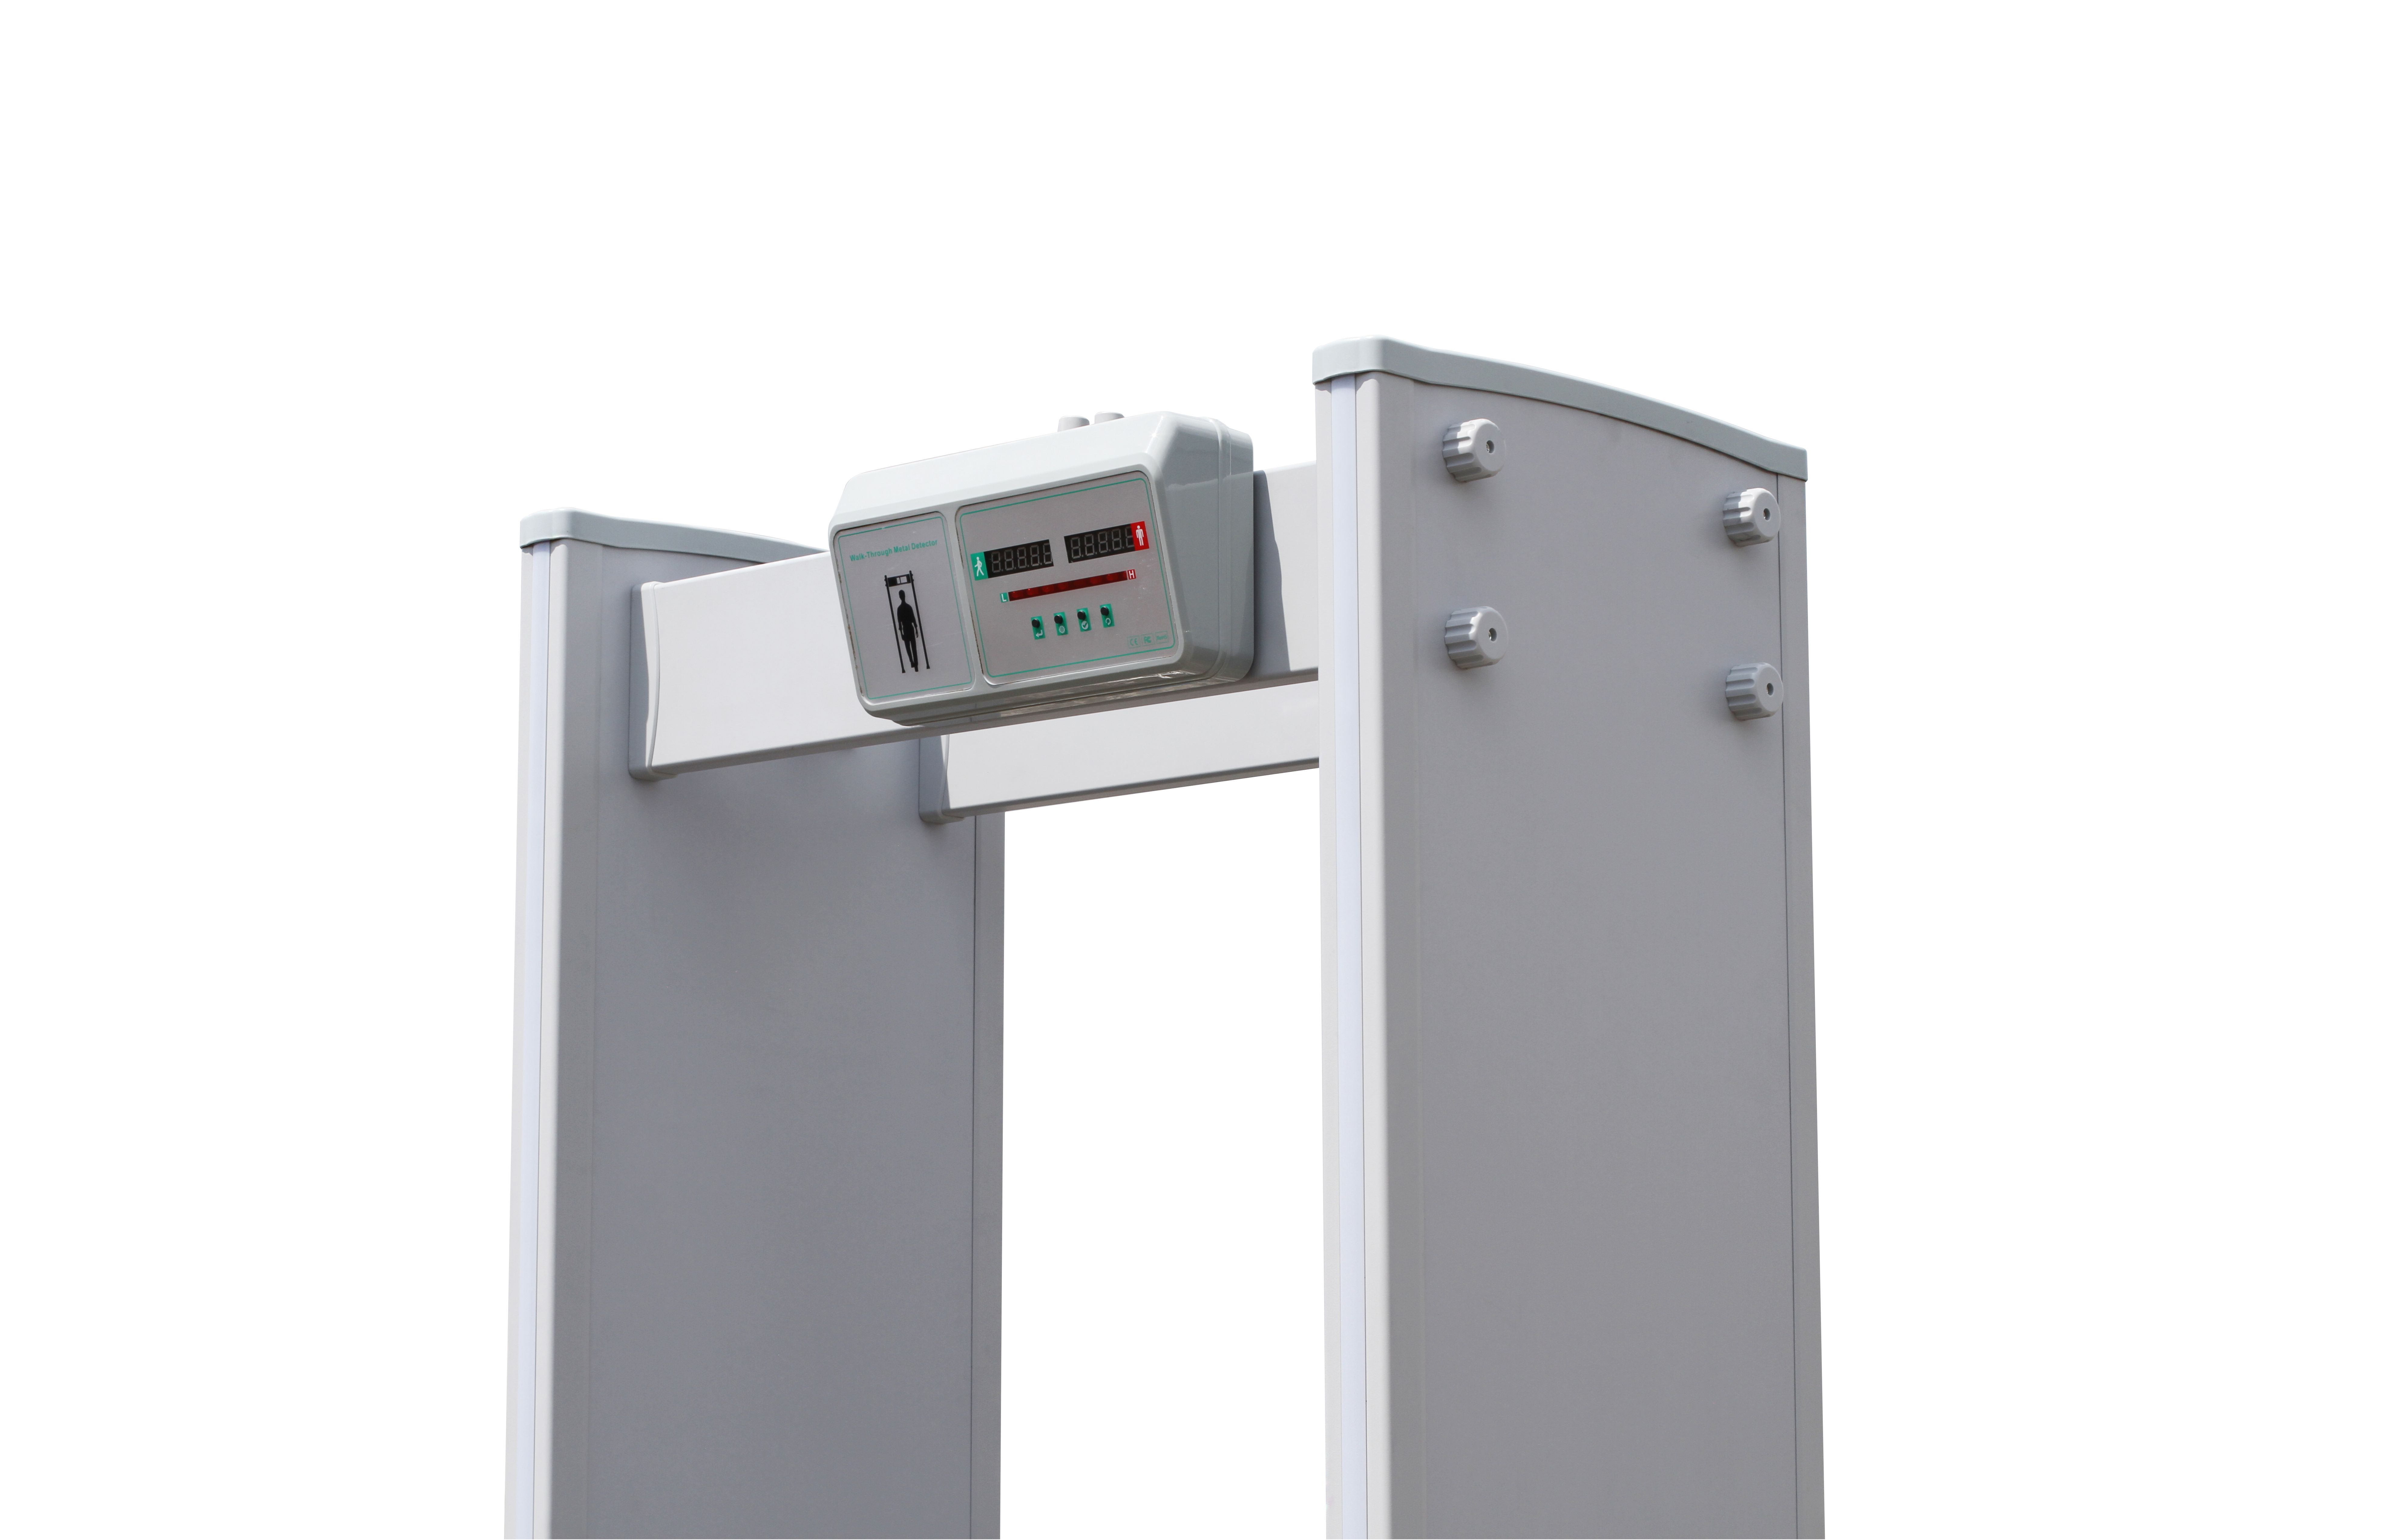 arco detector de metales del marco de la puerta de seguridad del aeropuerto